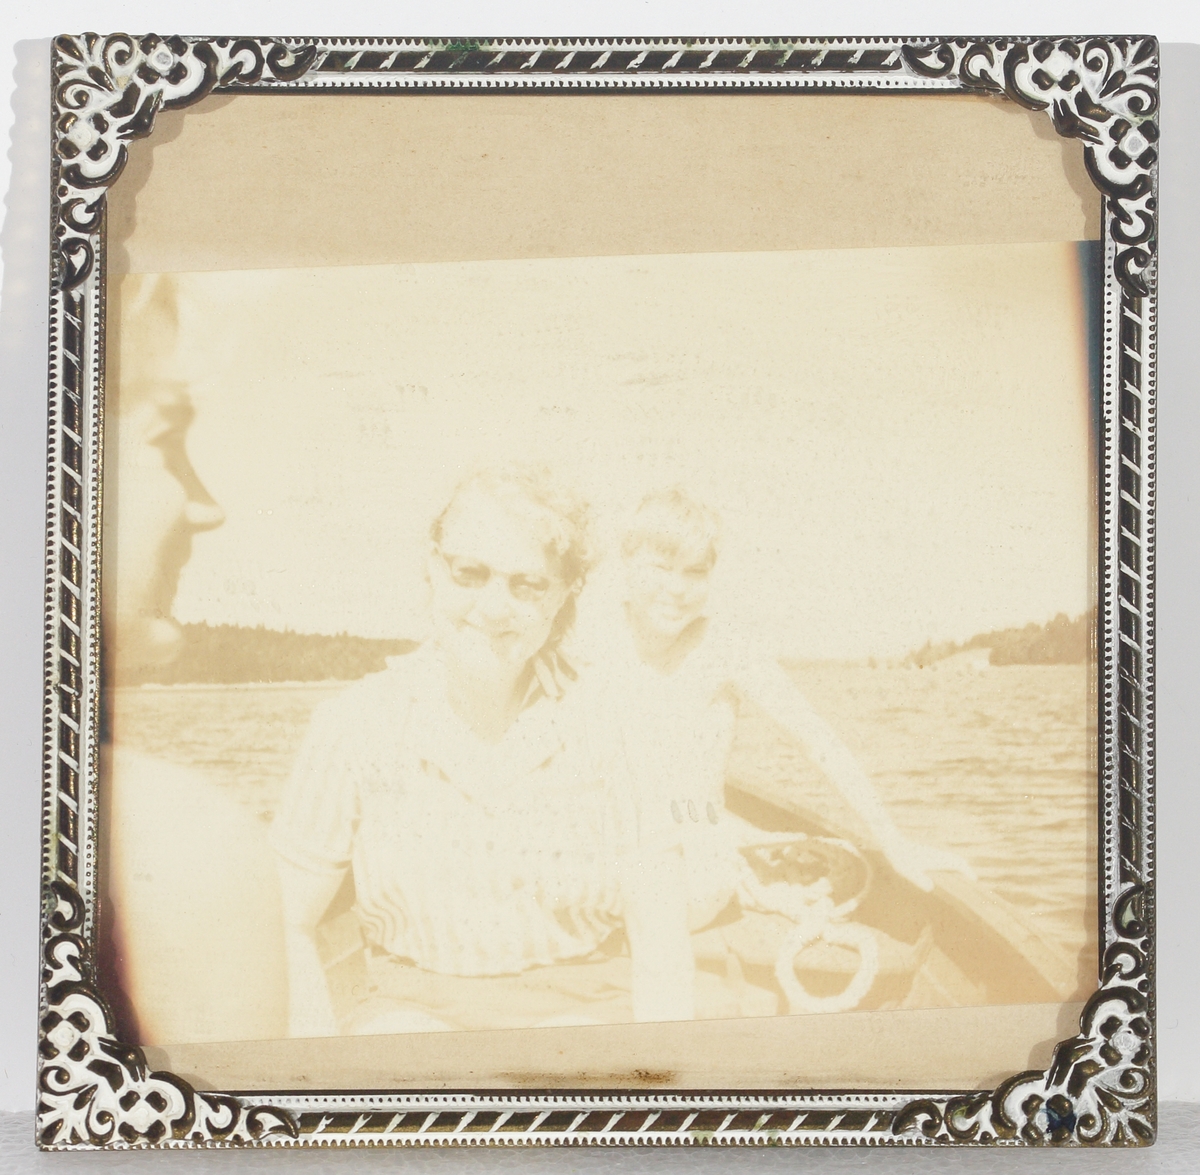 Fotografi föreställande familjen Vilhelm Moberg i en roddbåt.